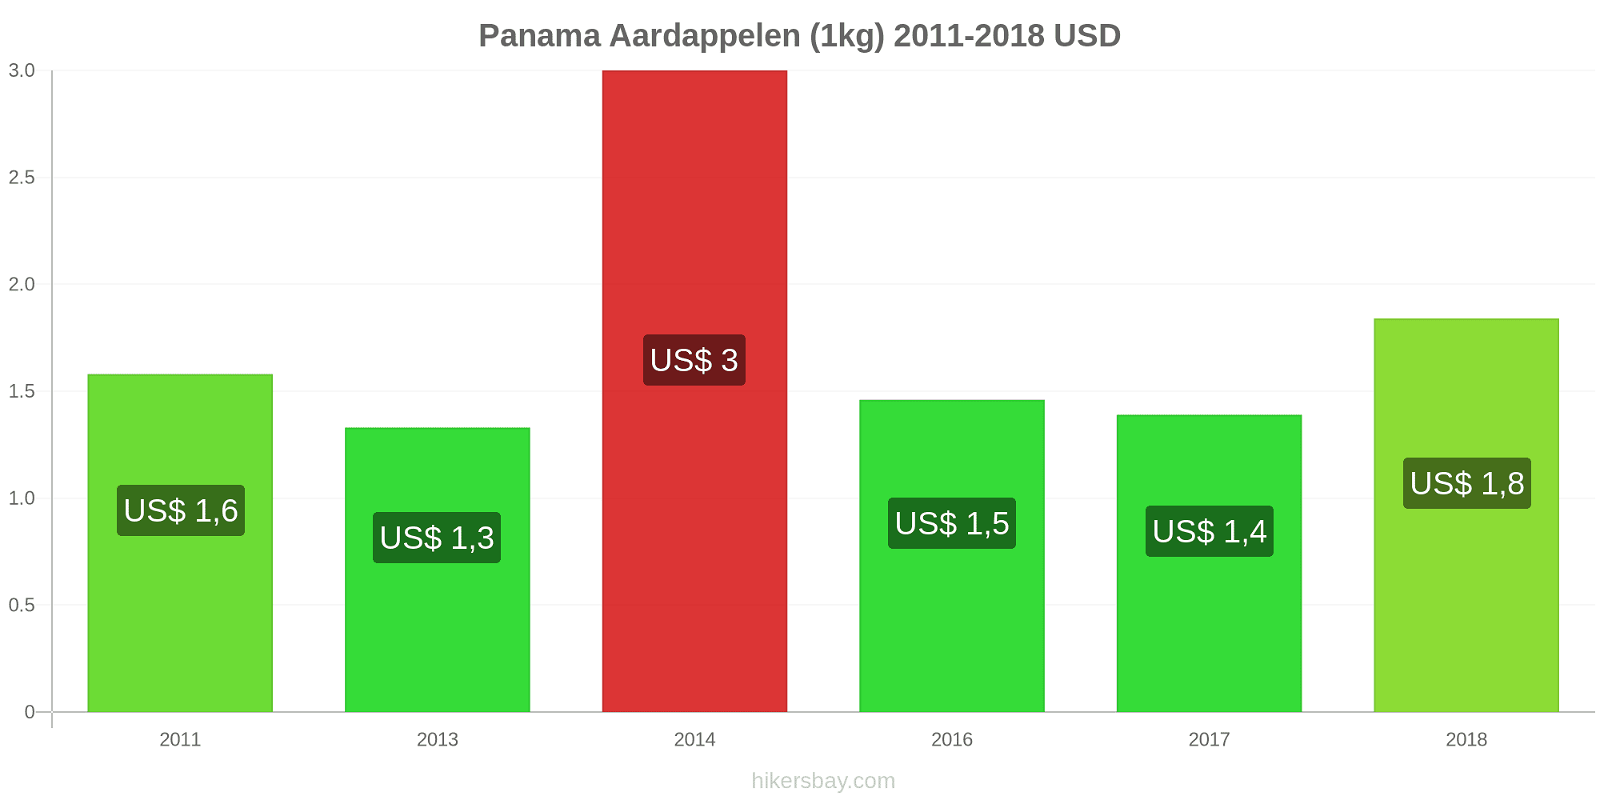 Panama prijswijzigingen Aardappelen (1kg) hikersbay.com